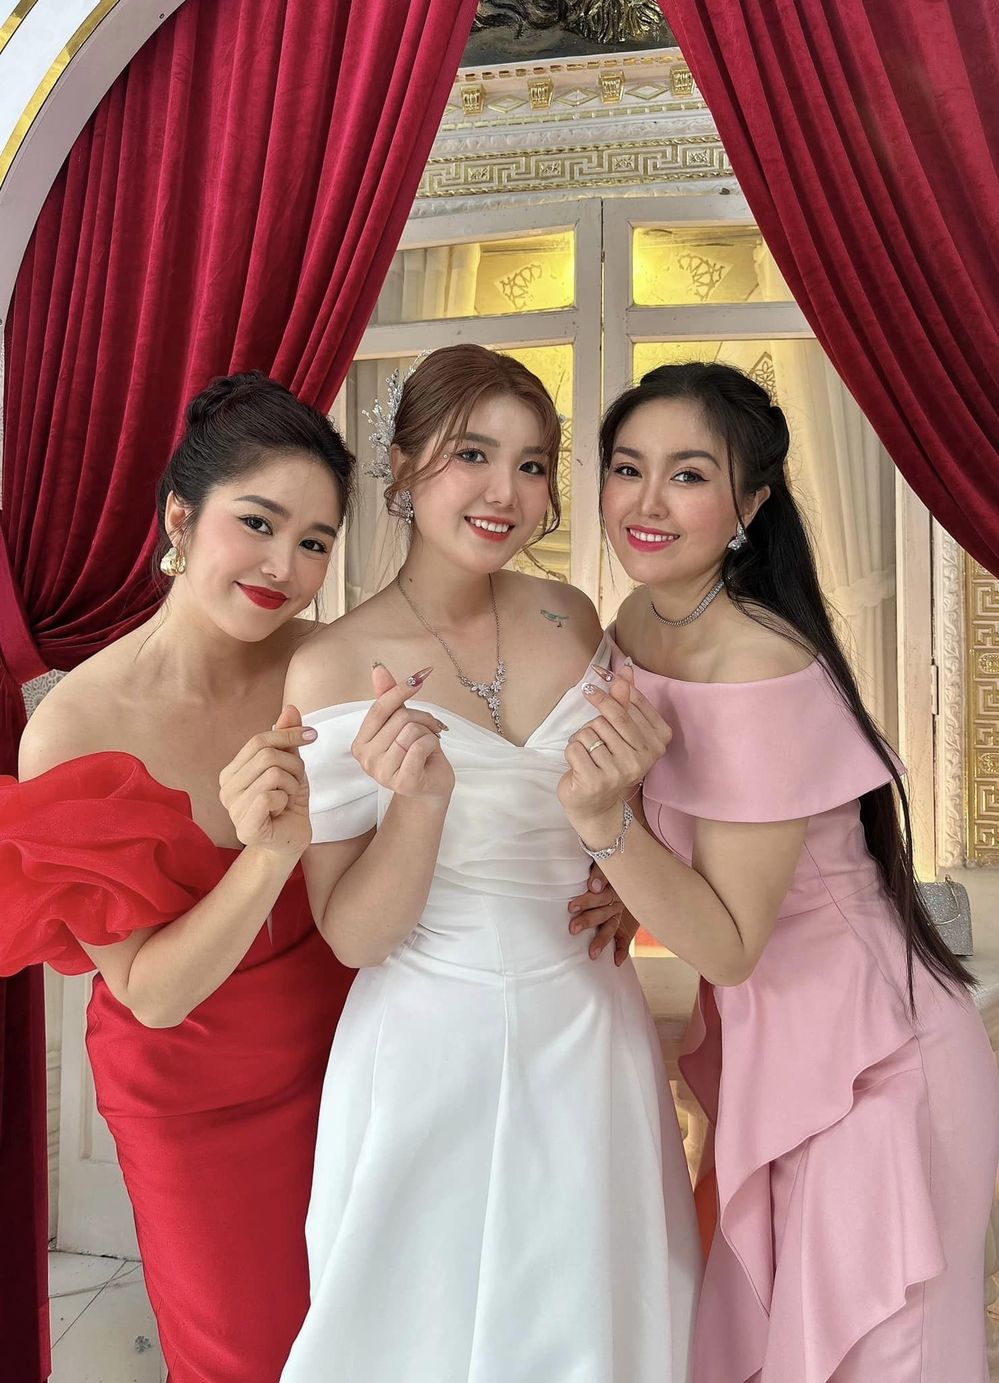  
3 chị em nhà Lê Phương cùng nhau khoe sắc trong ngày vui của gia đình. (Ảnh: FB Lê Phương)